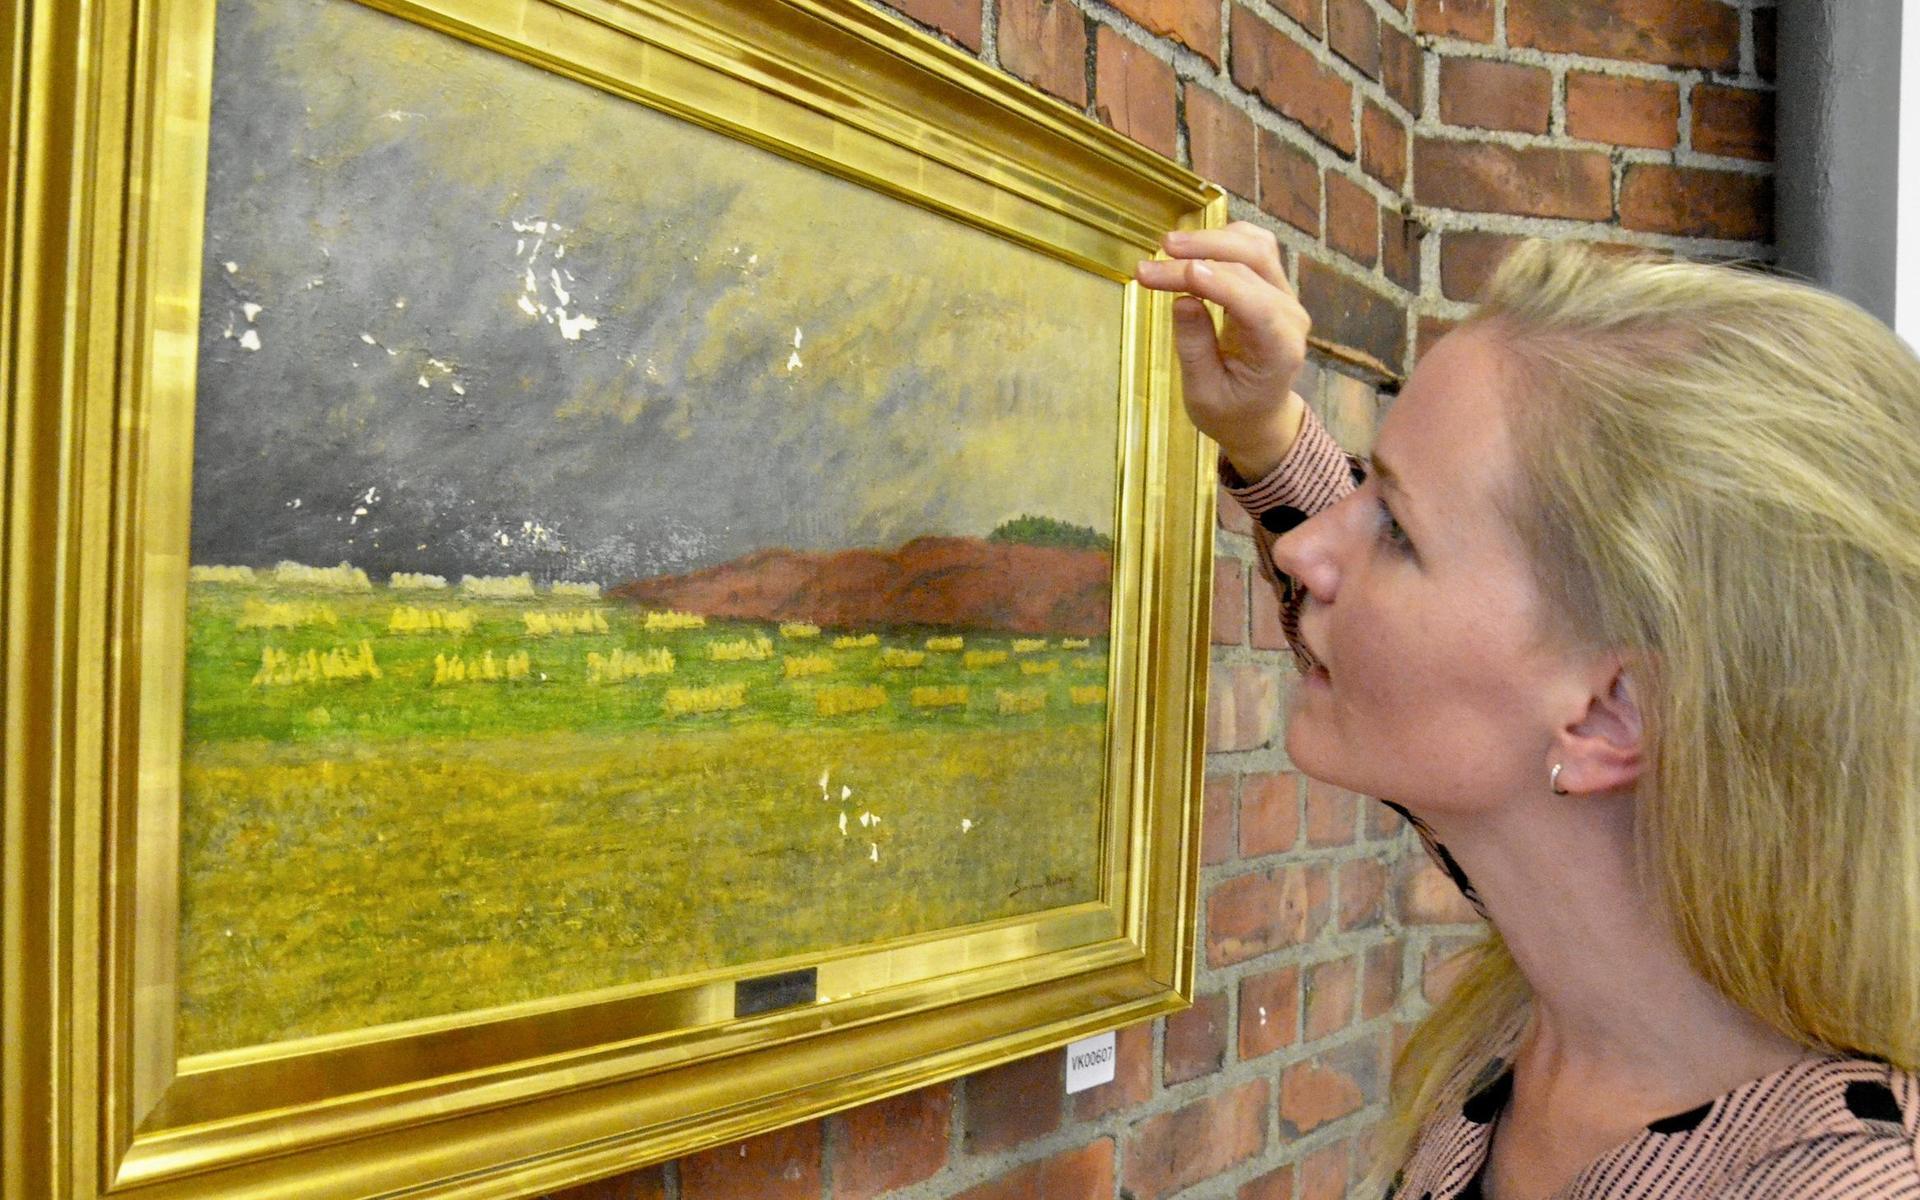 Kommunens konstkoordinator Cecilia Jonasson kollar skadorna på Severin Nilsons över 100 år gamla målning.